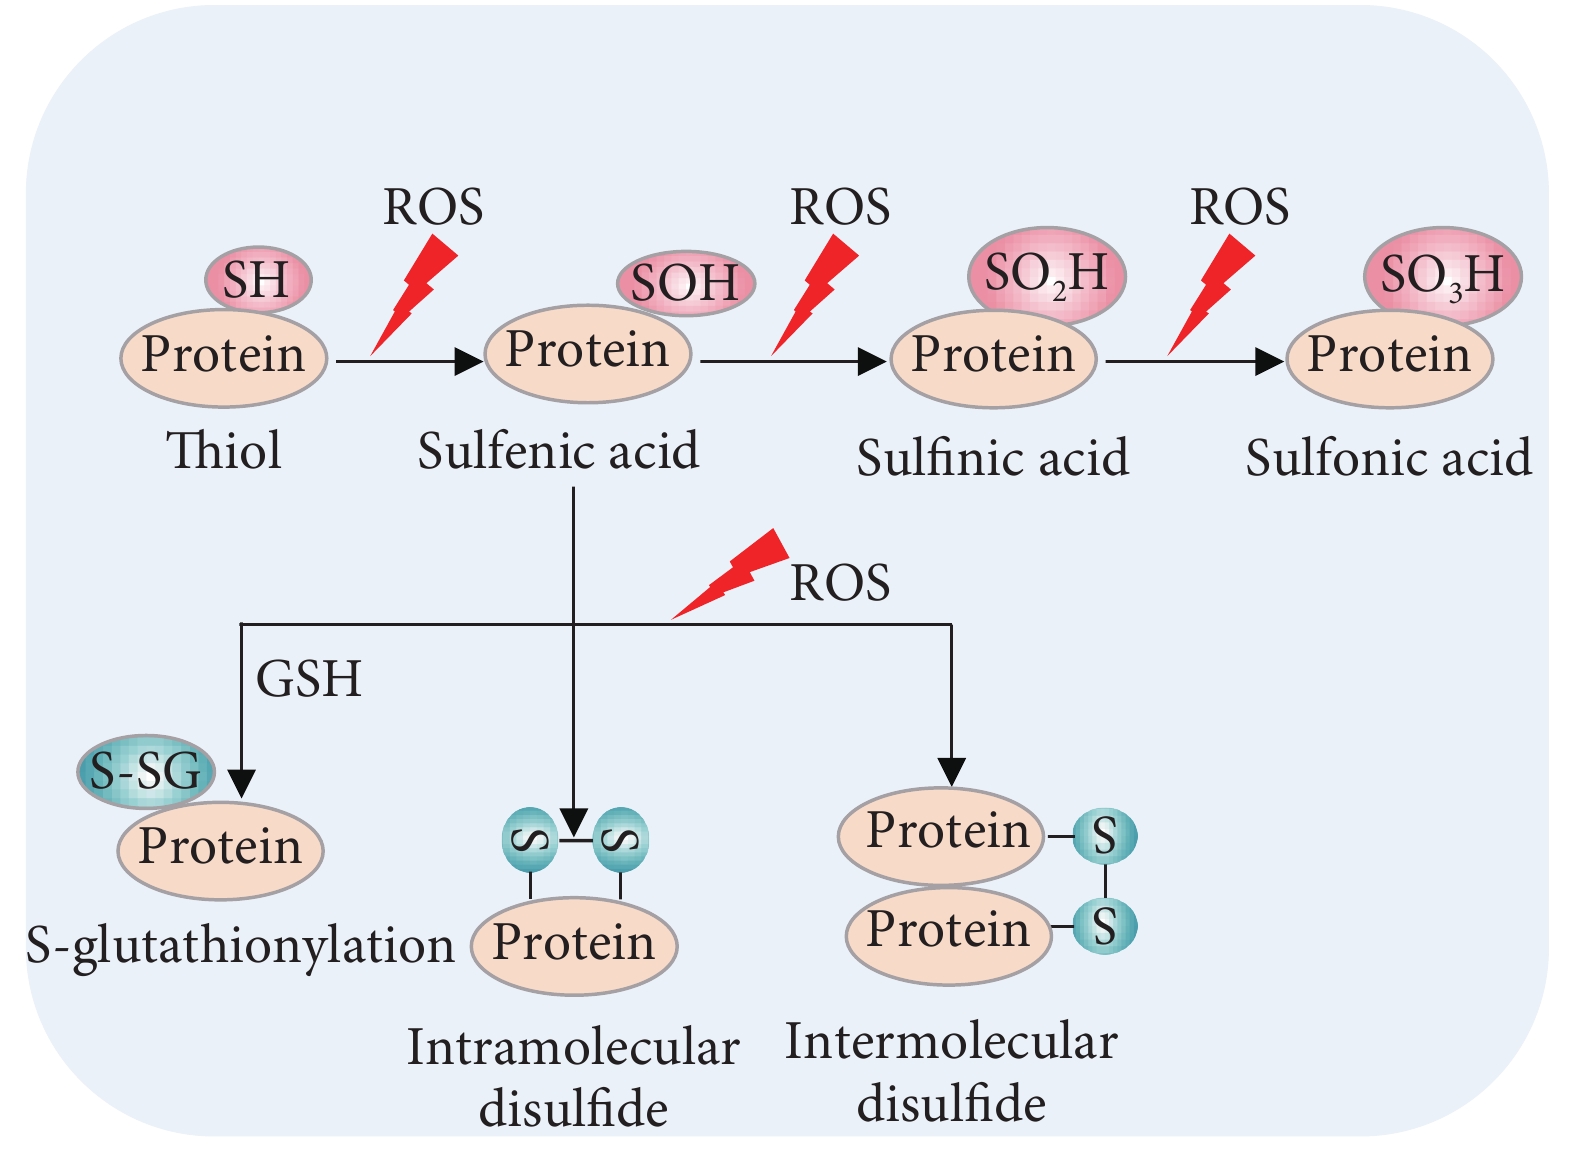 蛋白质翻译过程图解图片